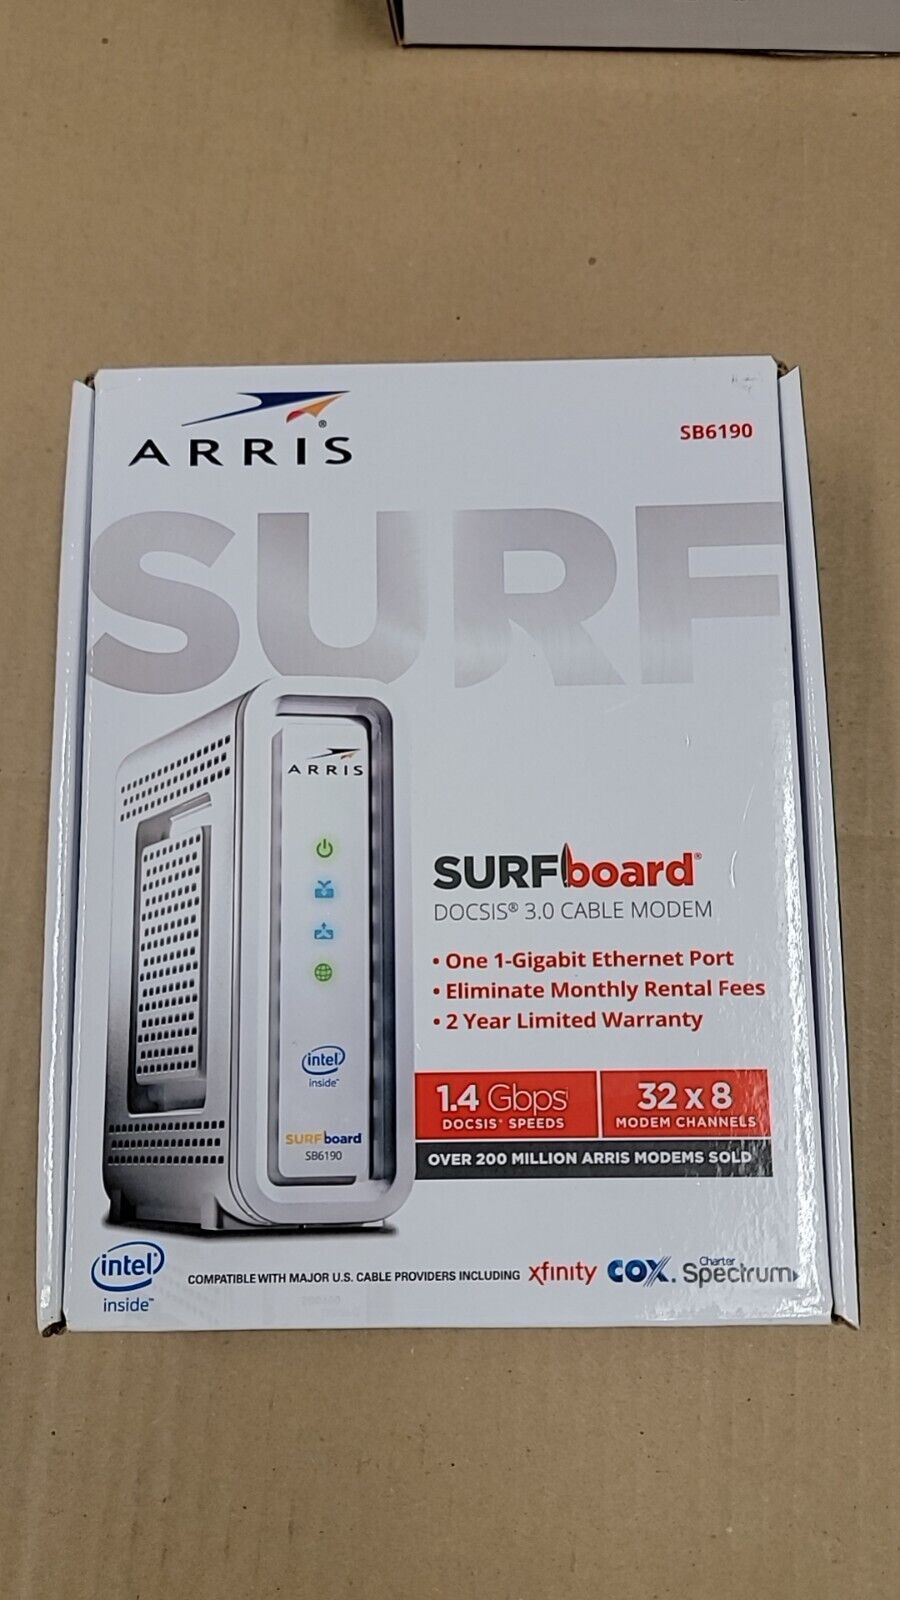 ARRIS SURFboard SB6190 DOCSIS 3.0 32 x 8 Gigabit Cable Modem White (Fast ship)**